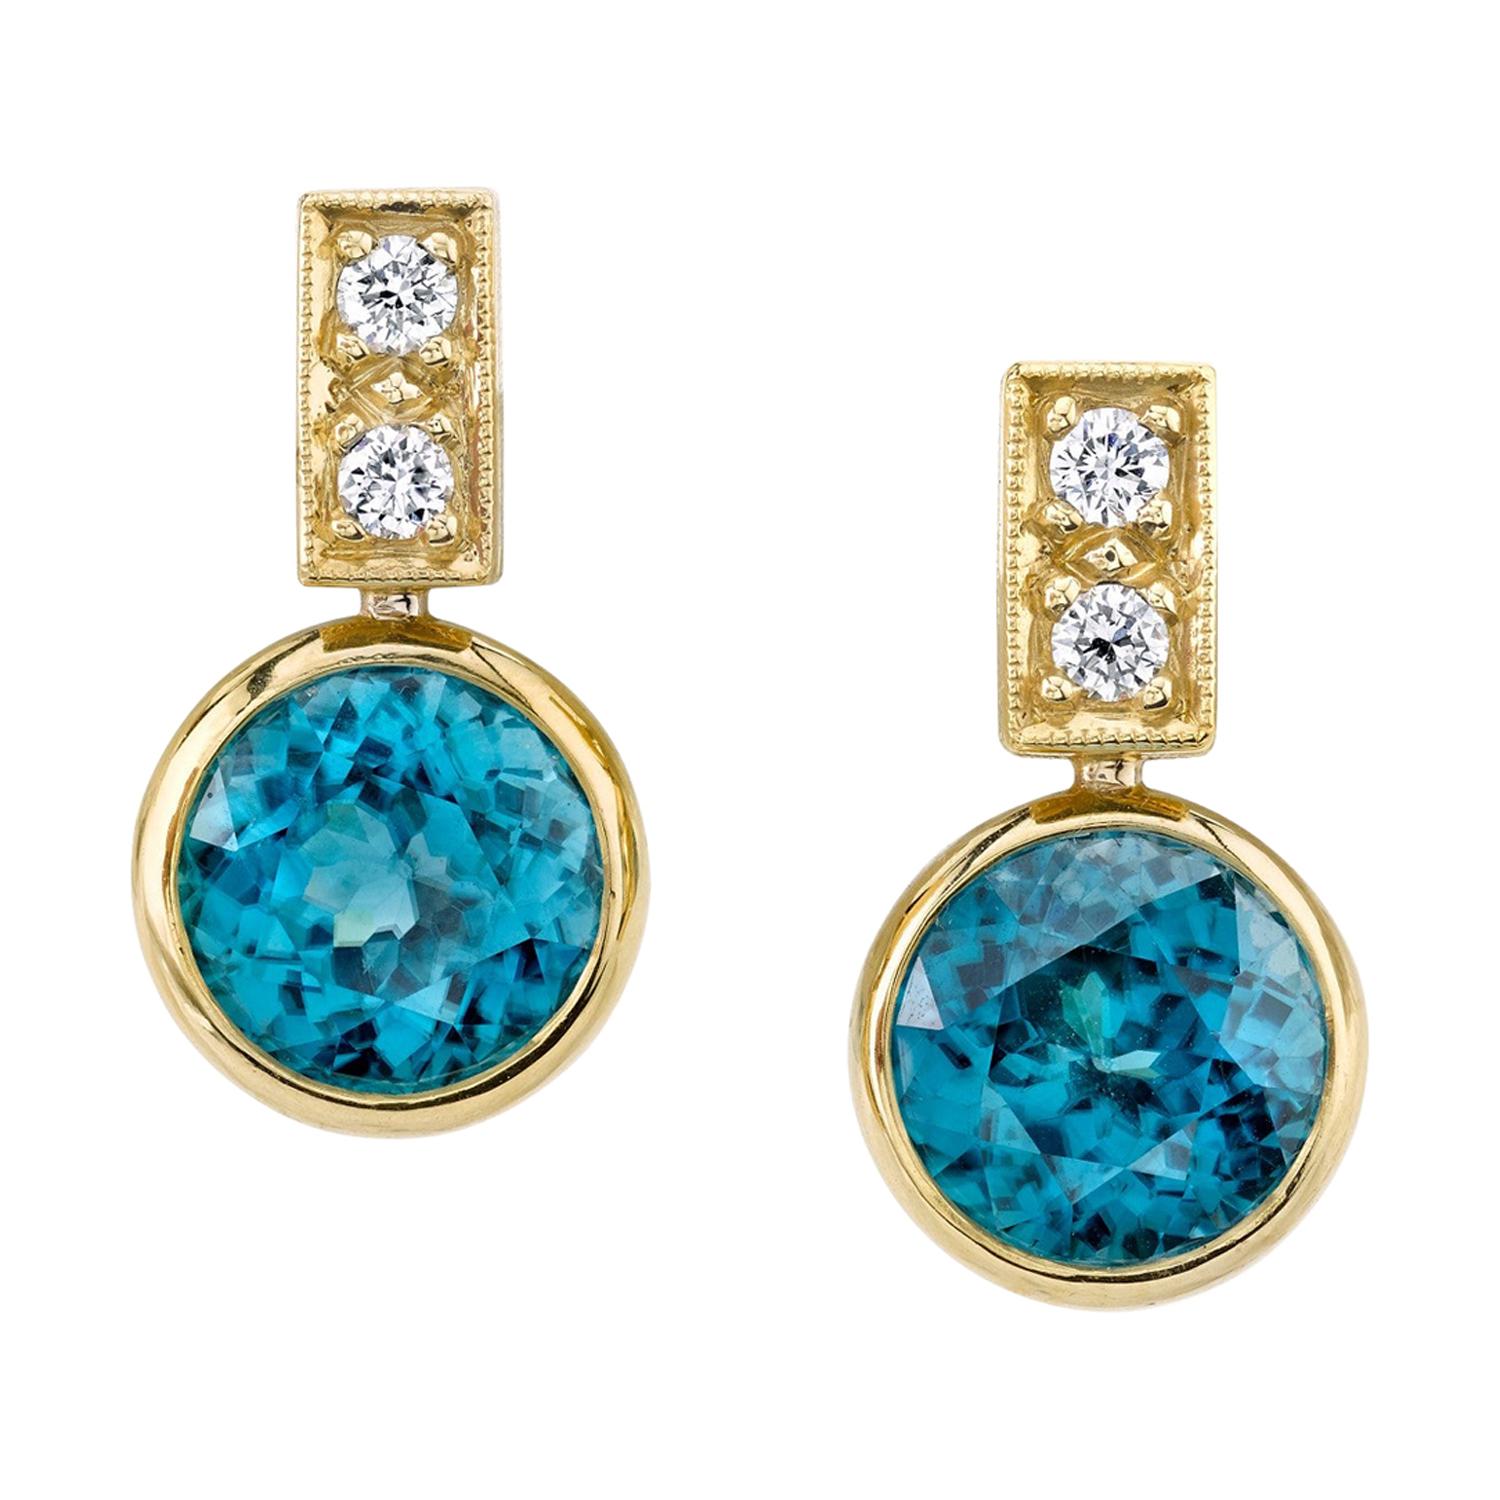 Blaue Zirkon- und Diamant-Tropfen-Ohrringe aus 18 Karat Gelbgold, insgesamt 9,64 Karat